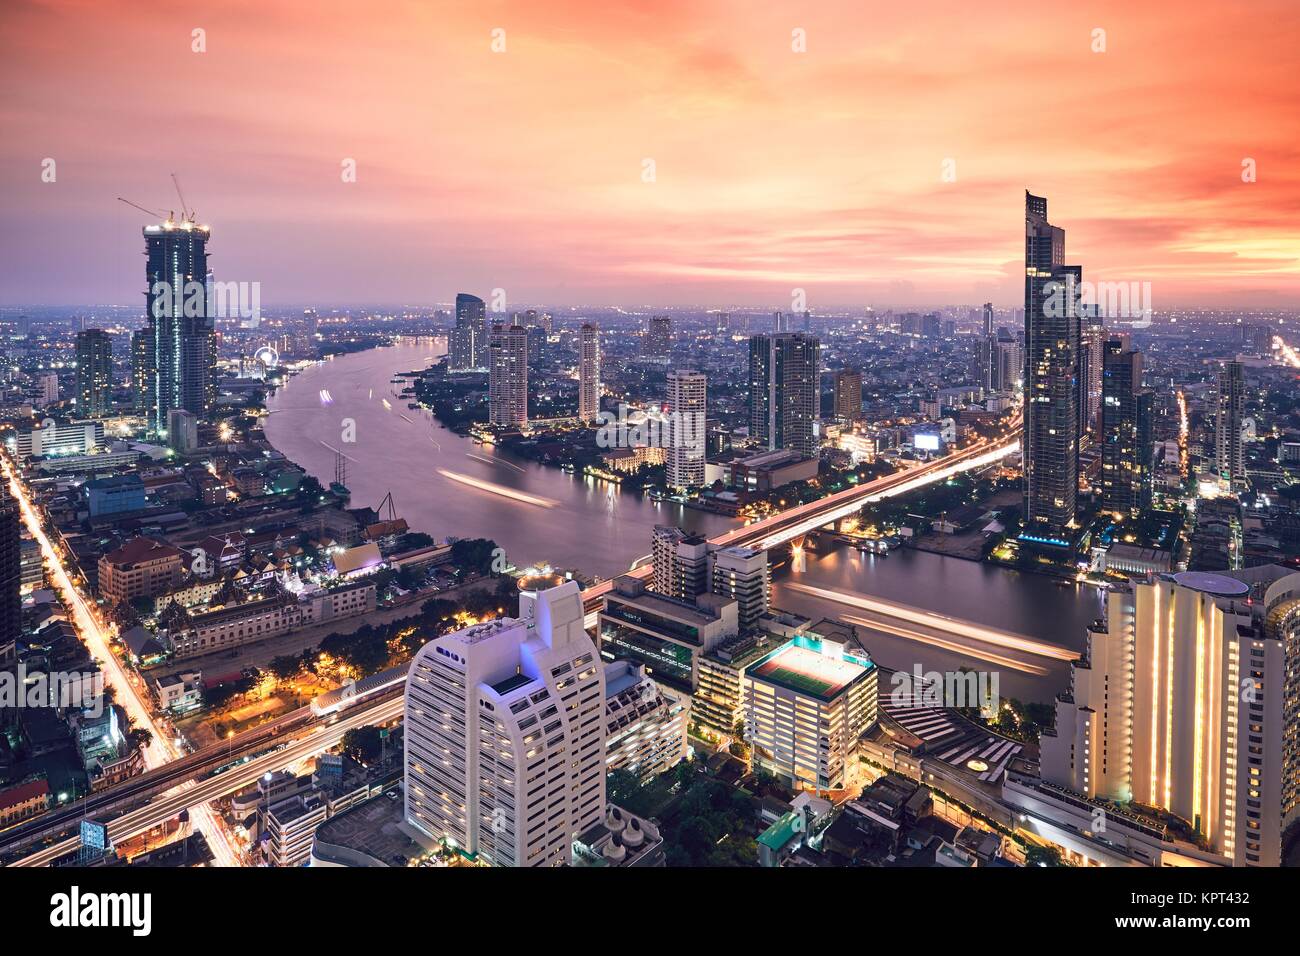 Bangkok durante la puesta de sol de oro. El horizonte de la ciudad con el tráfico en las carreteras y el río Chao Phraya. Foto de stock